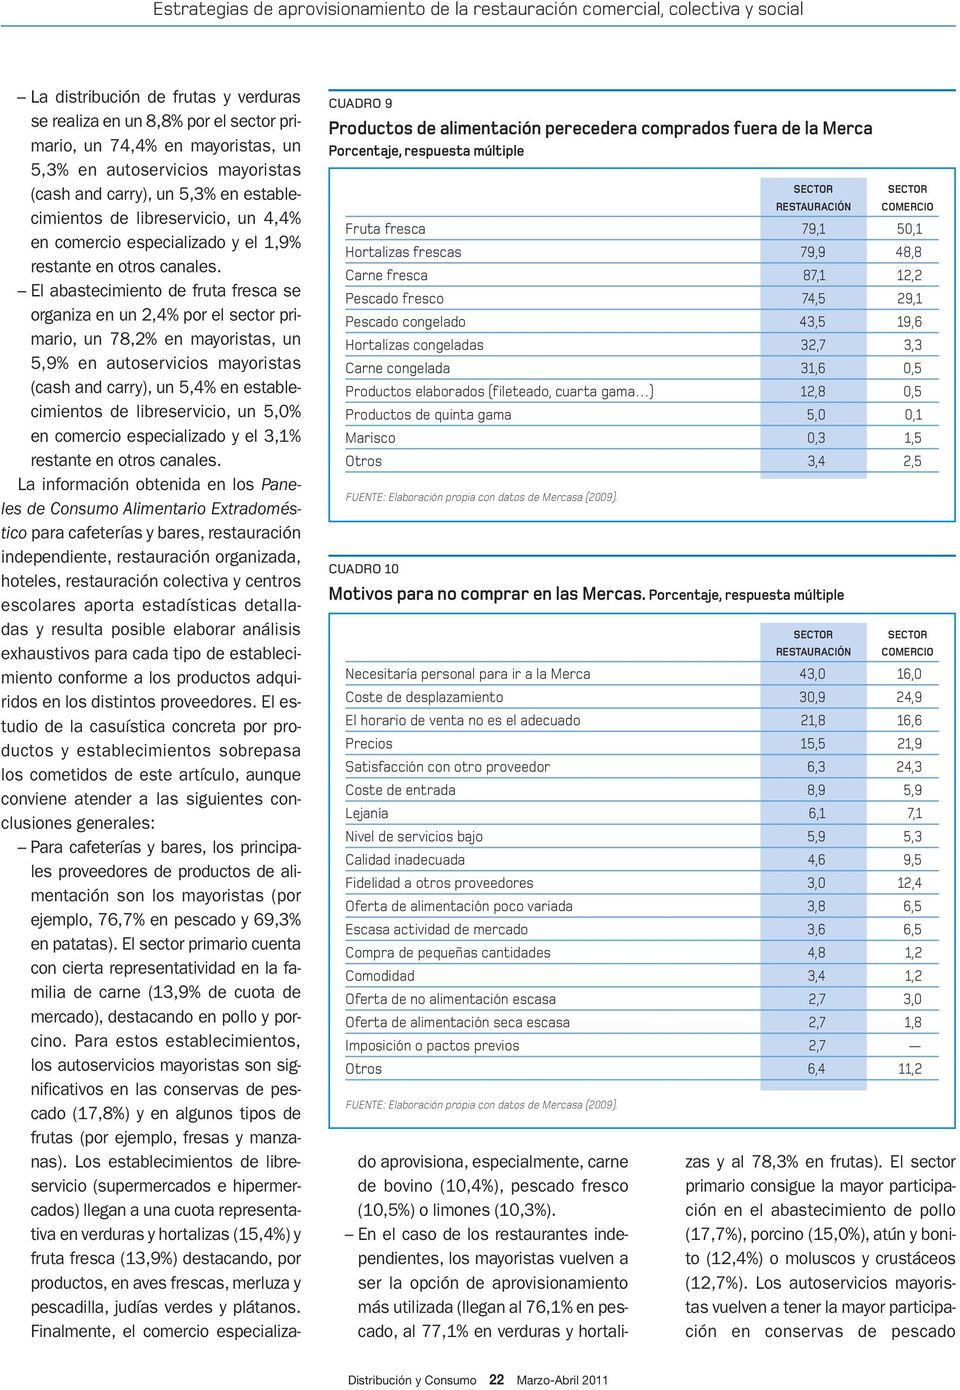 0,1 Marisco 0,3 1,5 Otros 3,4 2,5 FUENTE: Elaboración propia con datos de Mercasa (2009). CUADRO 10 Motivos para no comprar en las Mercas.